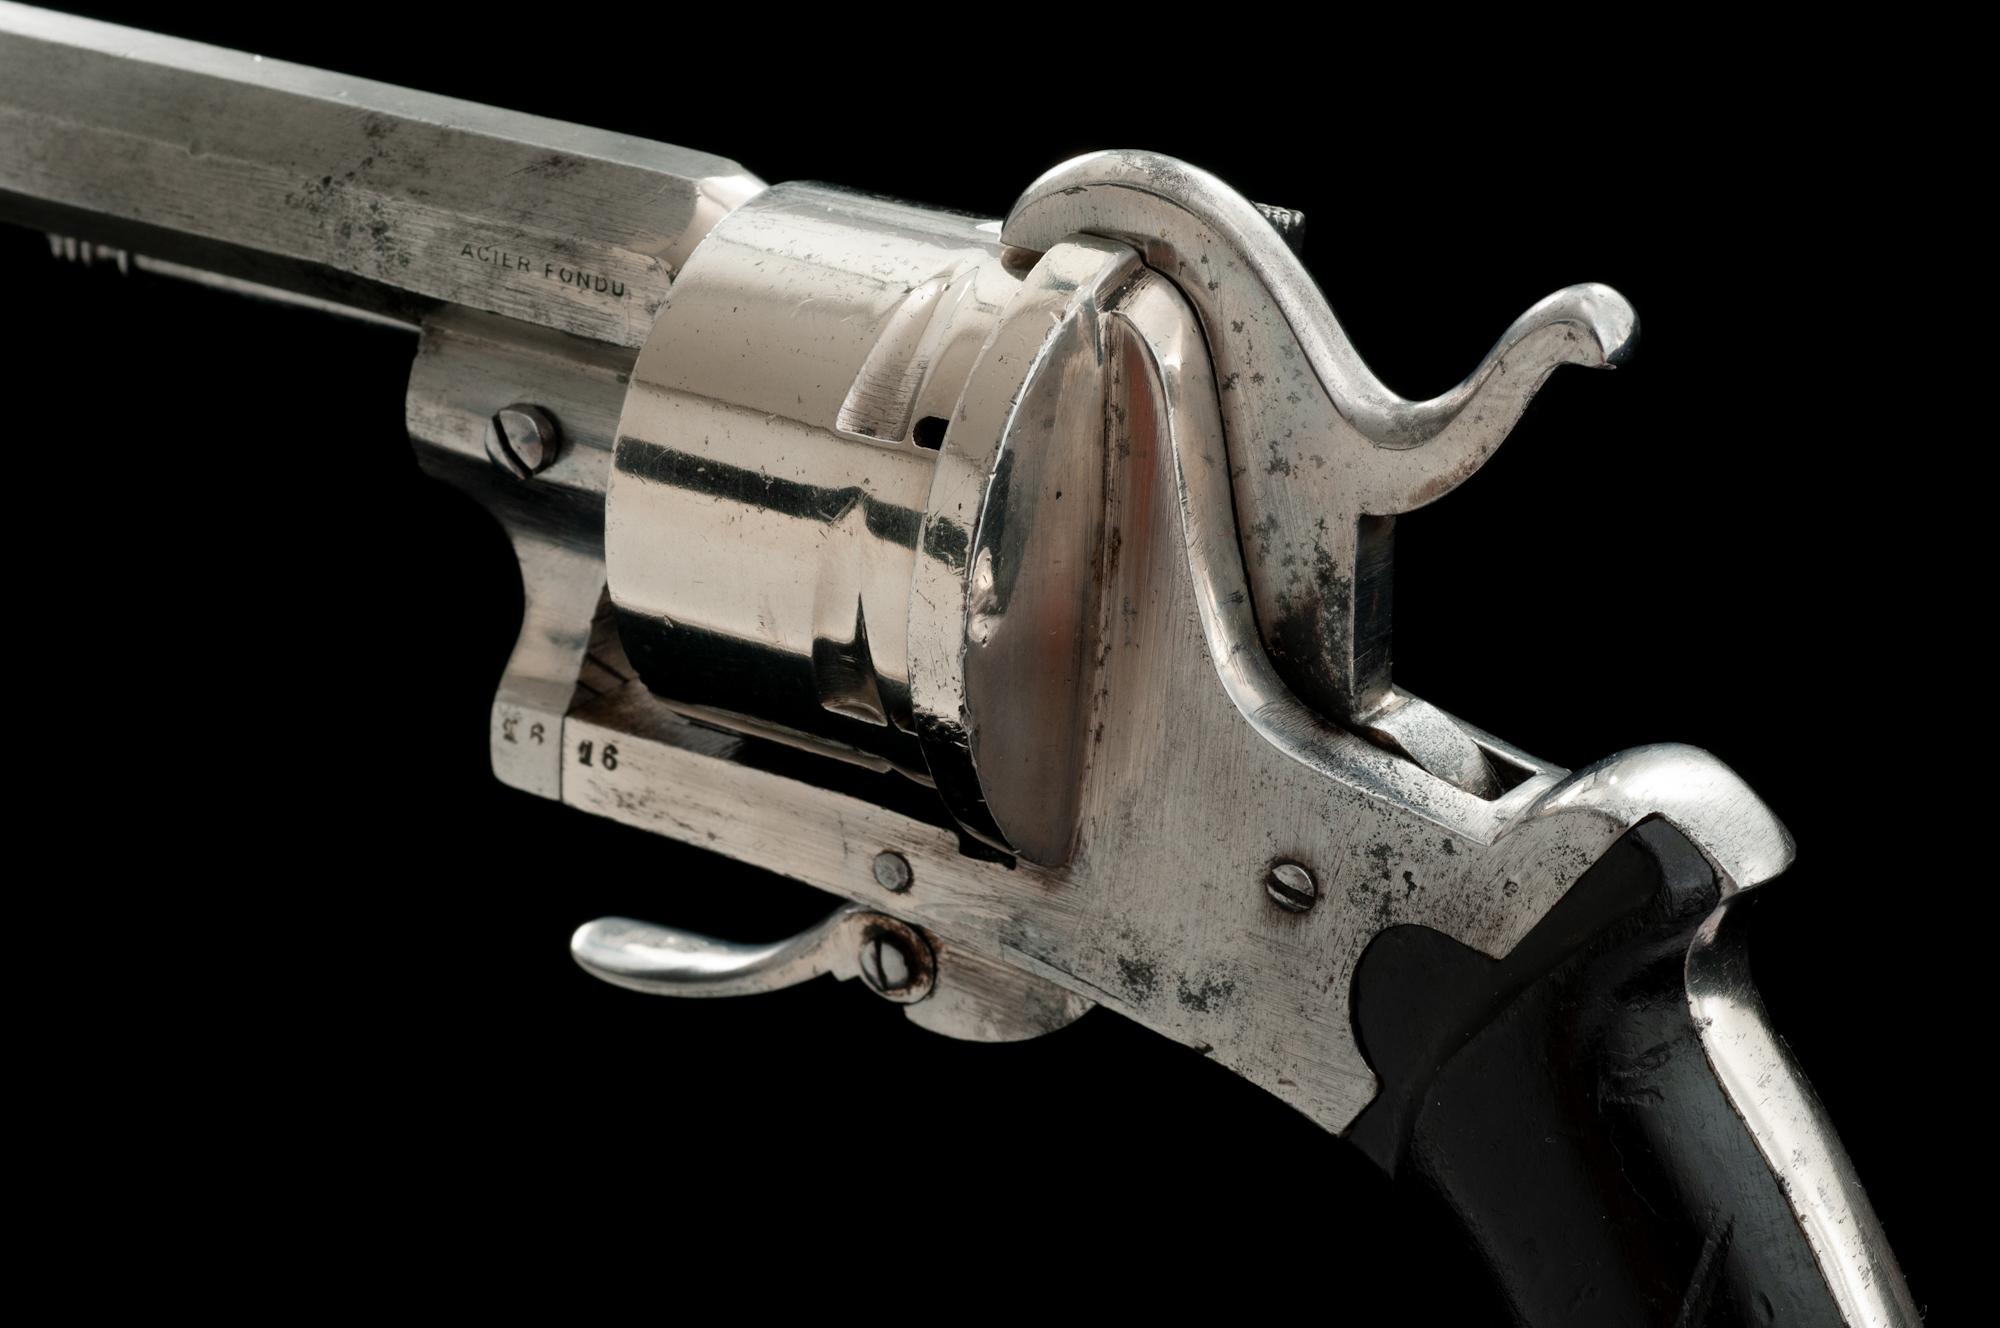 European Double Action Pinfire Revolver